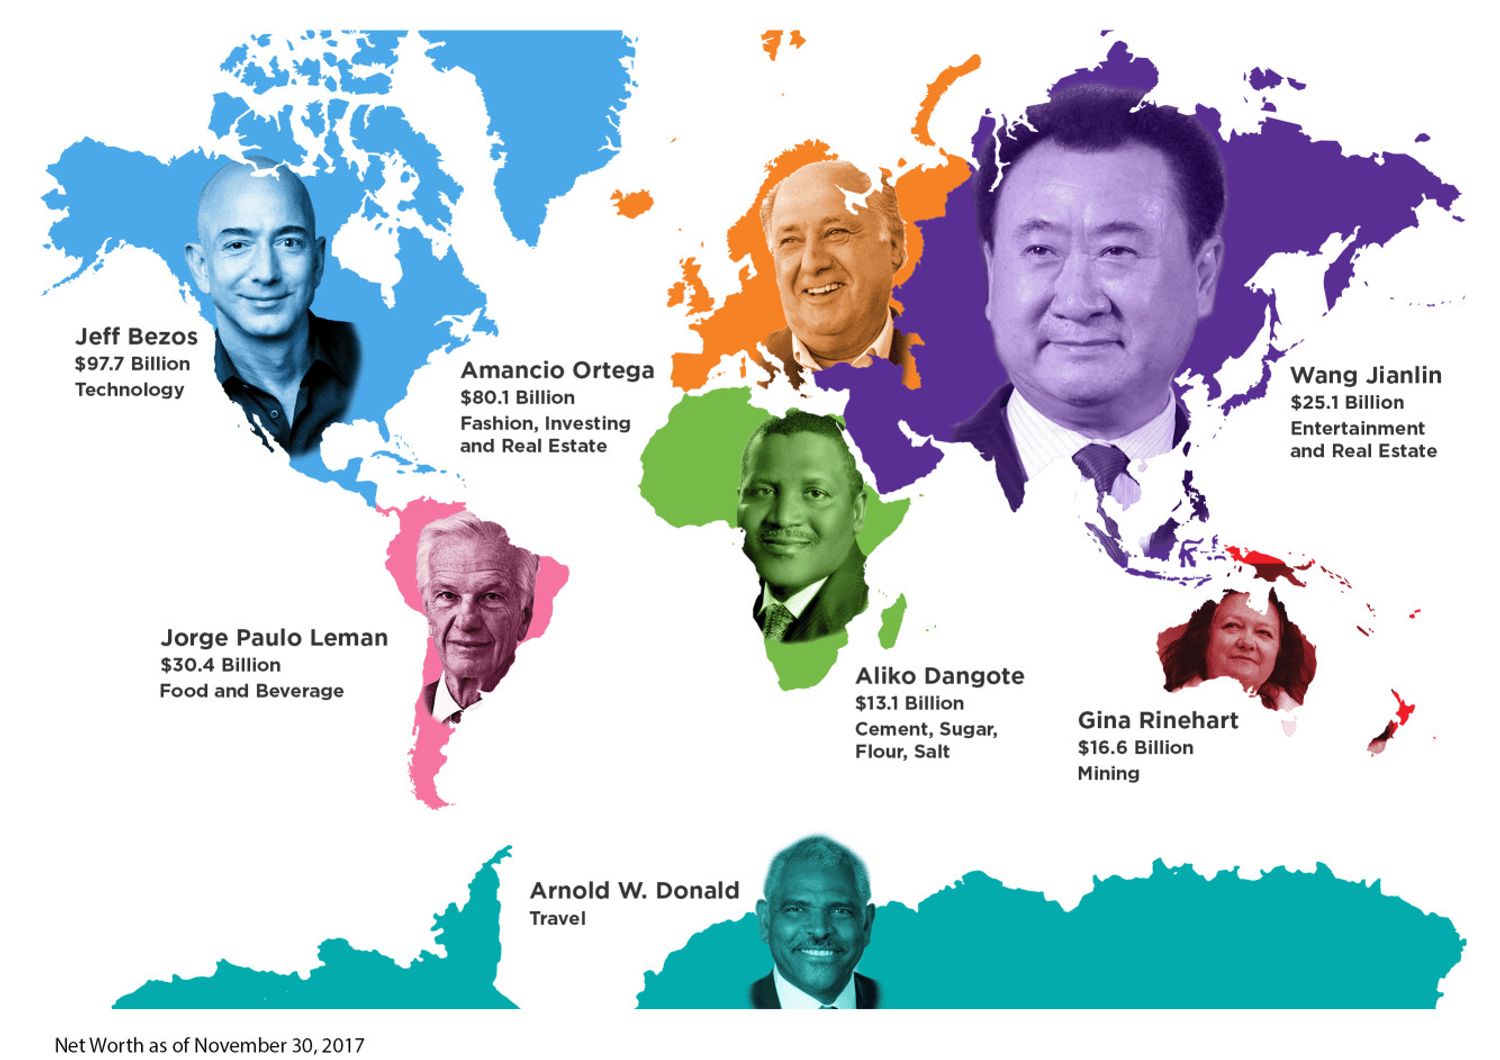 Continente per continente chi sono gli uomini (e le donne) pi&ugrave; ricchi del mondo